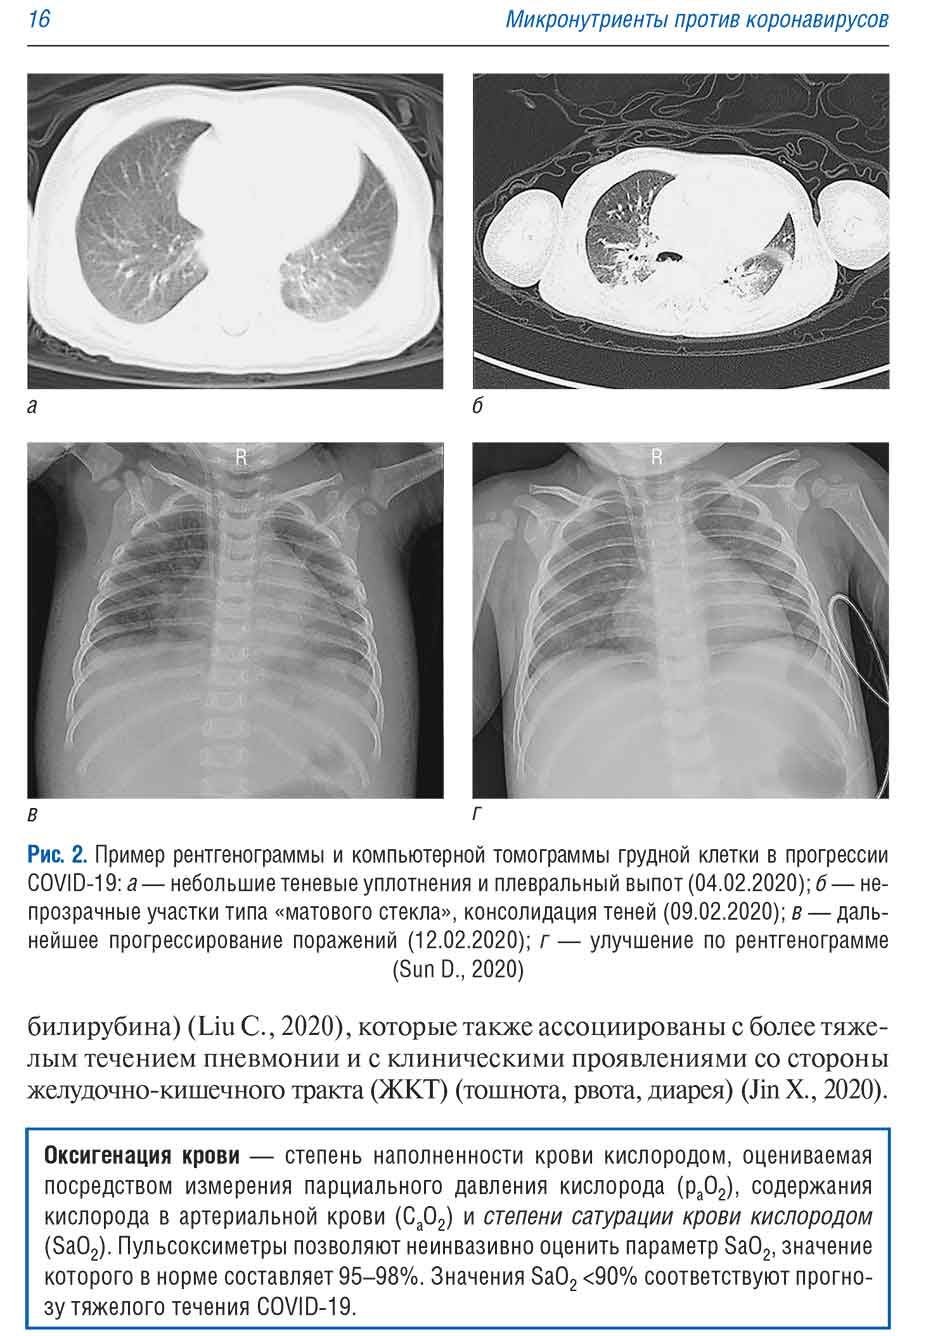 Рис. 2. Пример рентгенограммы и компьютерной томограммы грудной клетки в прогрессии